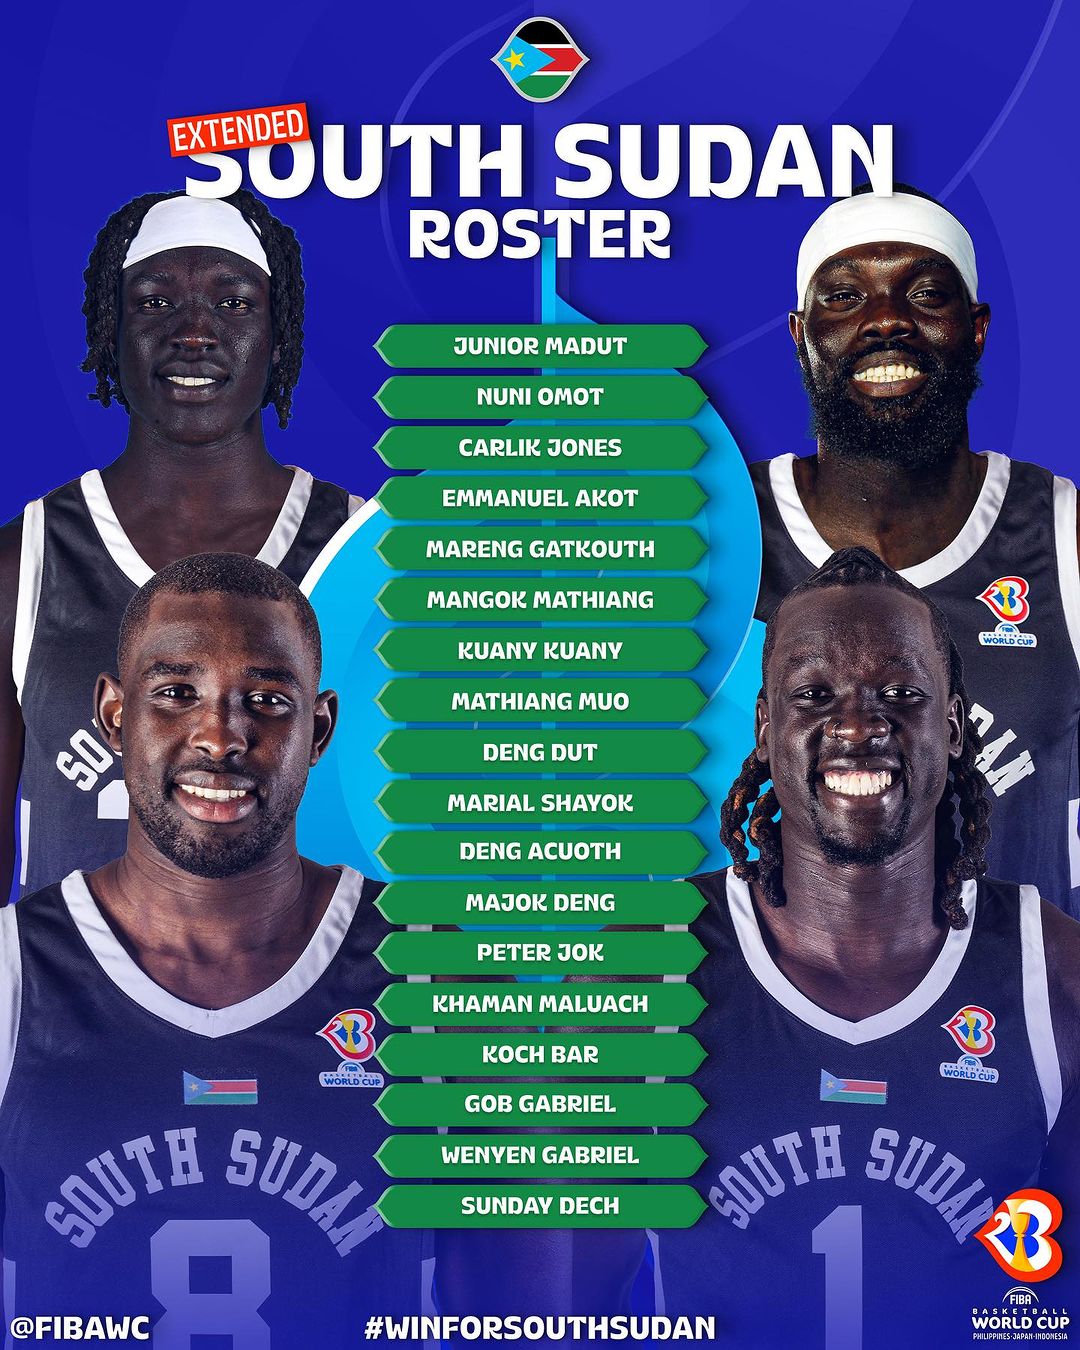 殳海：南苏丹多位新加入球员参赛资格存疑国际篮联用特权搞双标